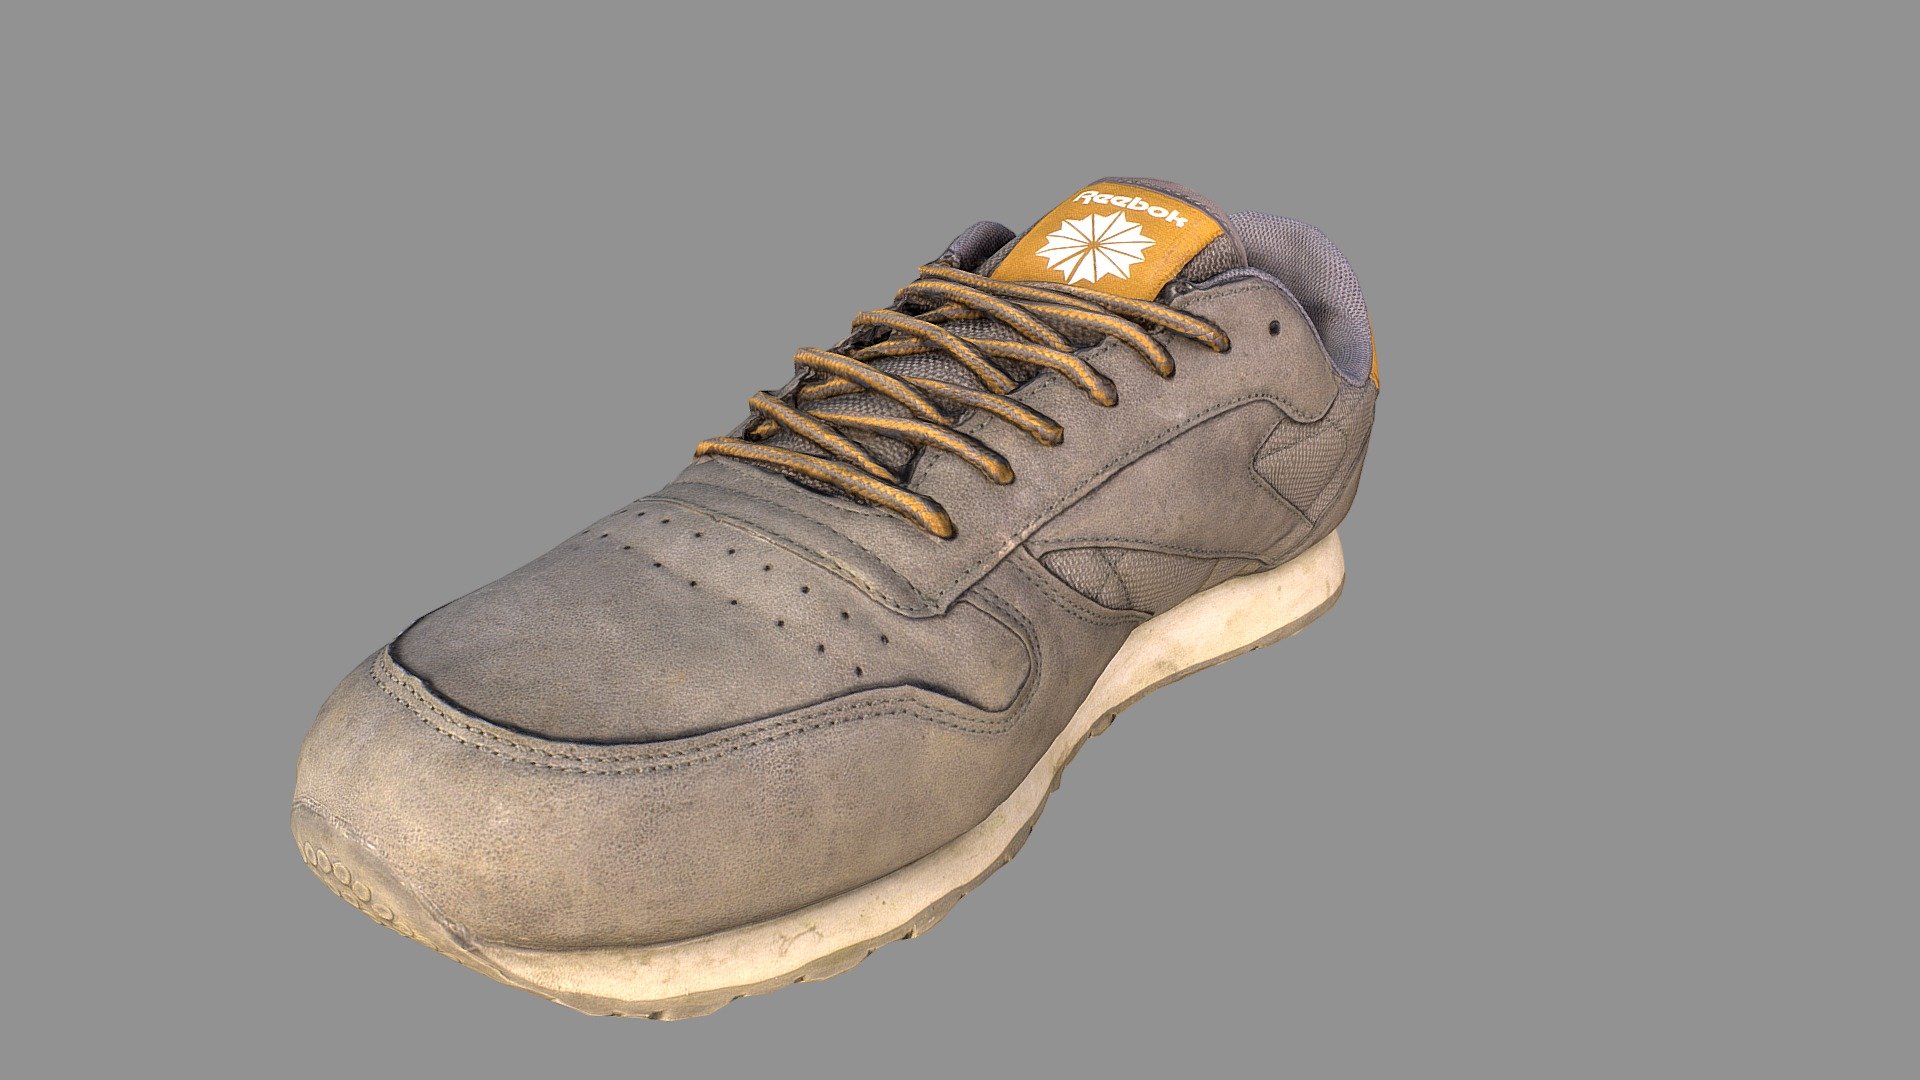 Worn Reebok sneaker shoe 3D model (low-poly) - Buy Royalty Free 3D ...